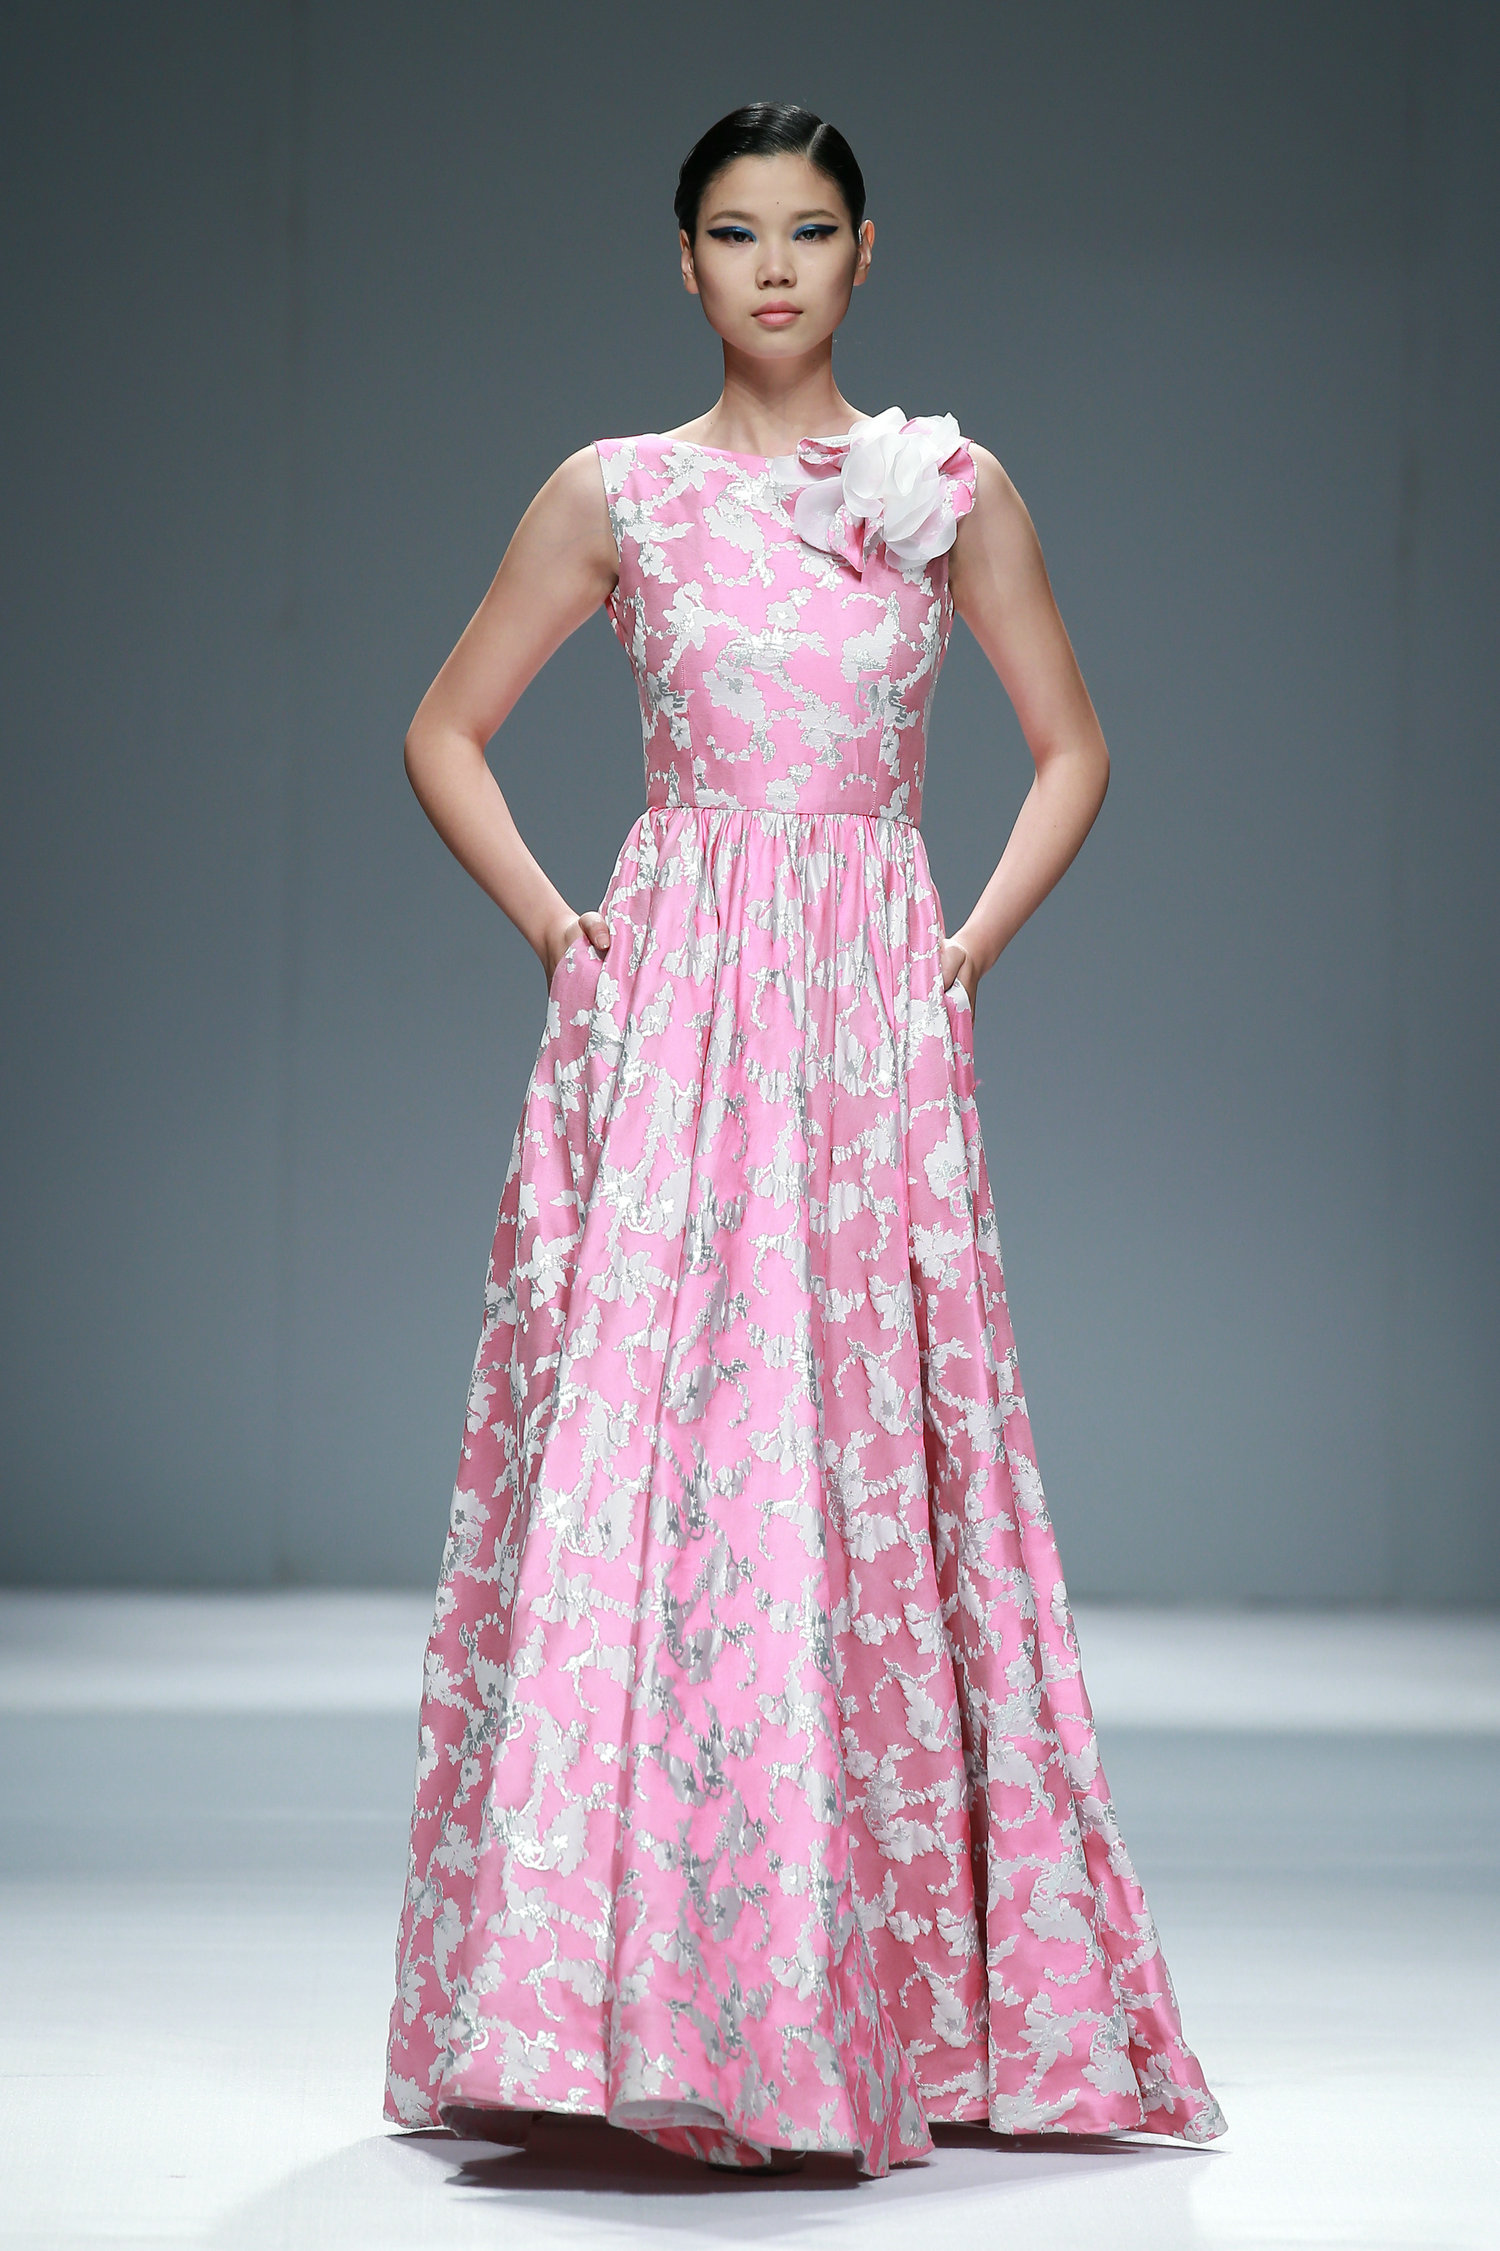 2016春夏中国国际时装周 Giada Curti高定时装发布